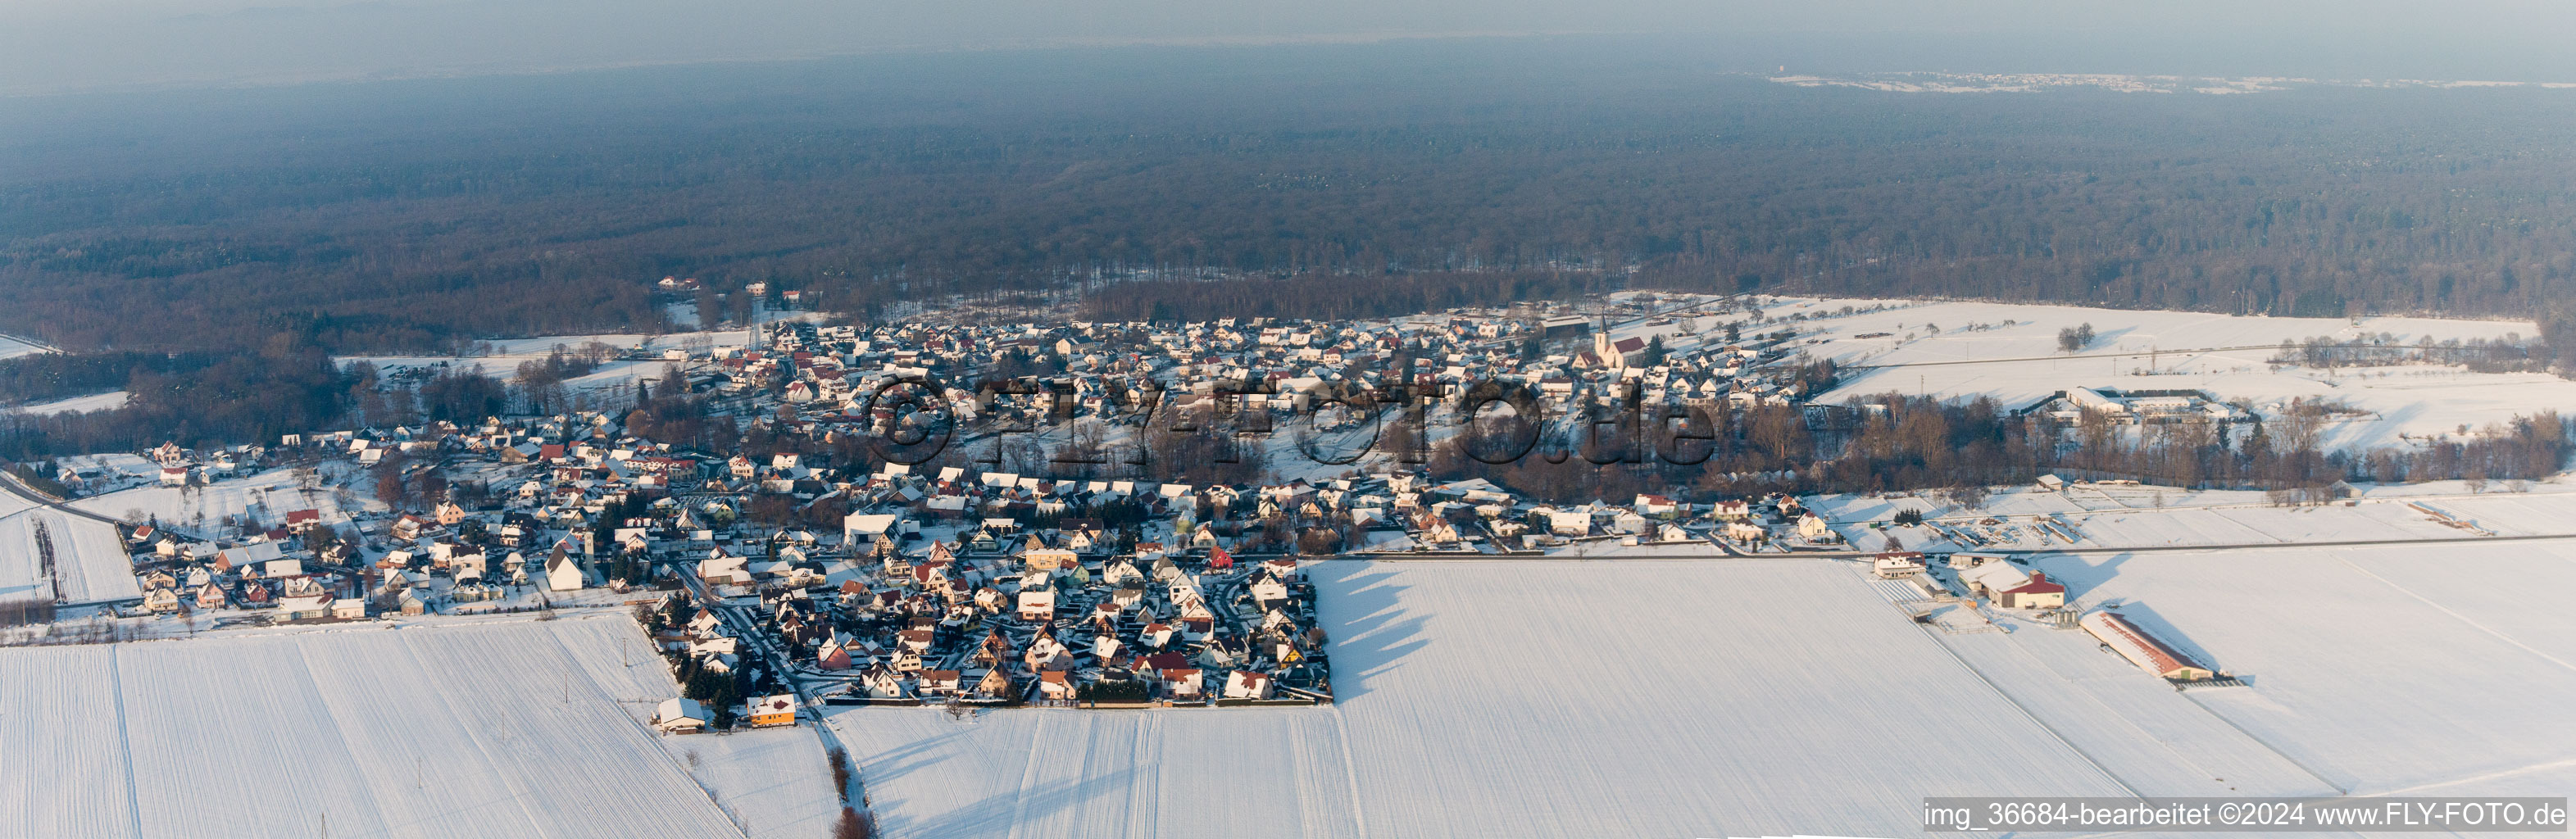 Panorama der winterlich schneebedeckten Dorf - Ansicht am Rande von landwirtschaftlichen Feldern und Nutzflächen in Scheibenhard in Grand Est im Bundesland Bas-Rhin, Frankreich